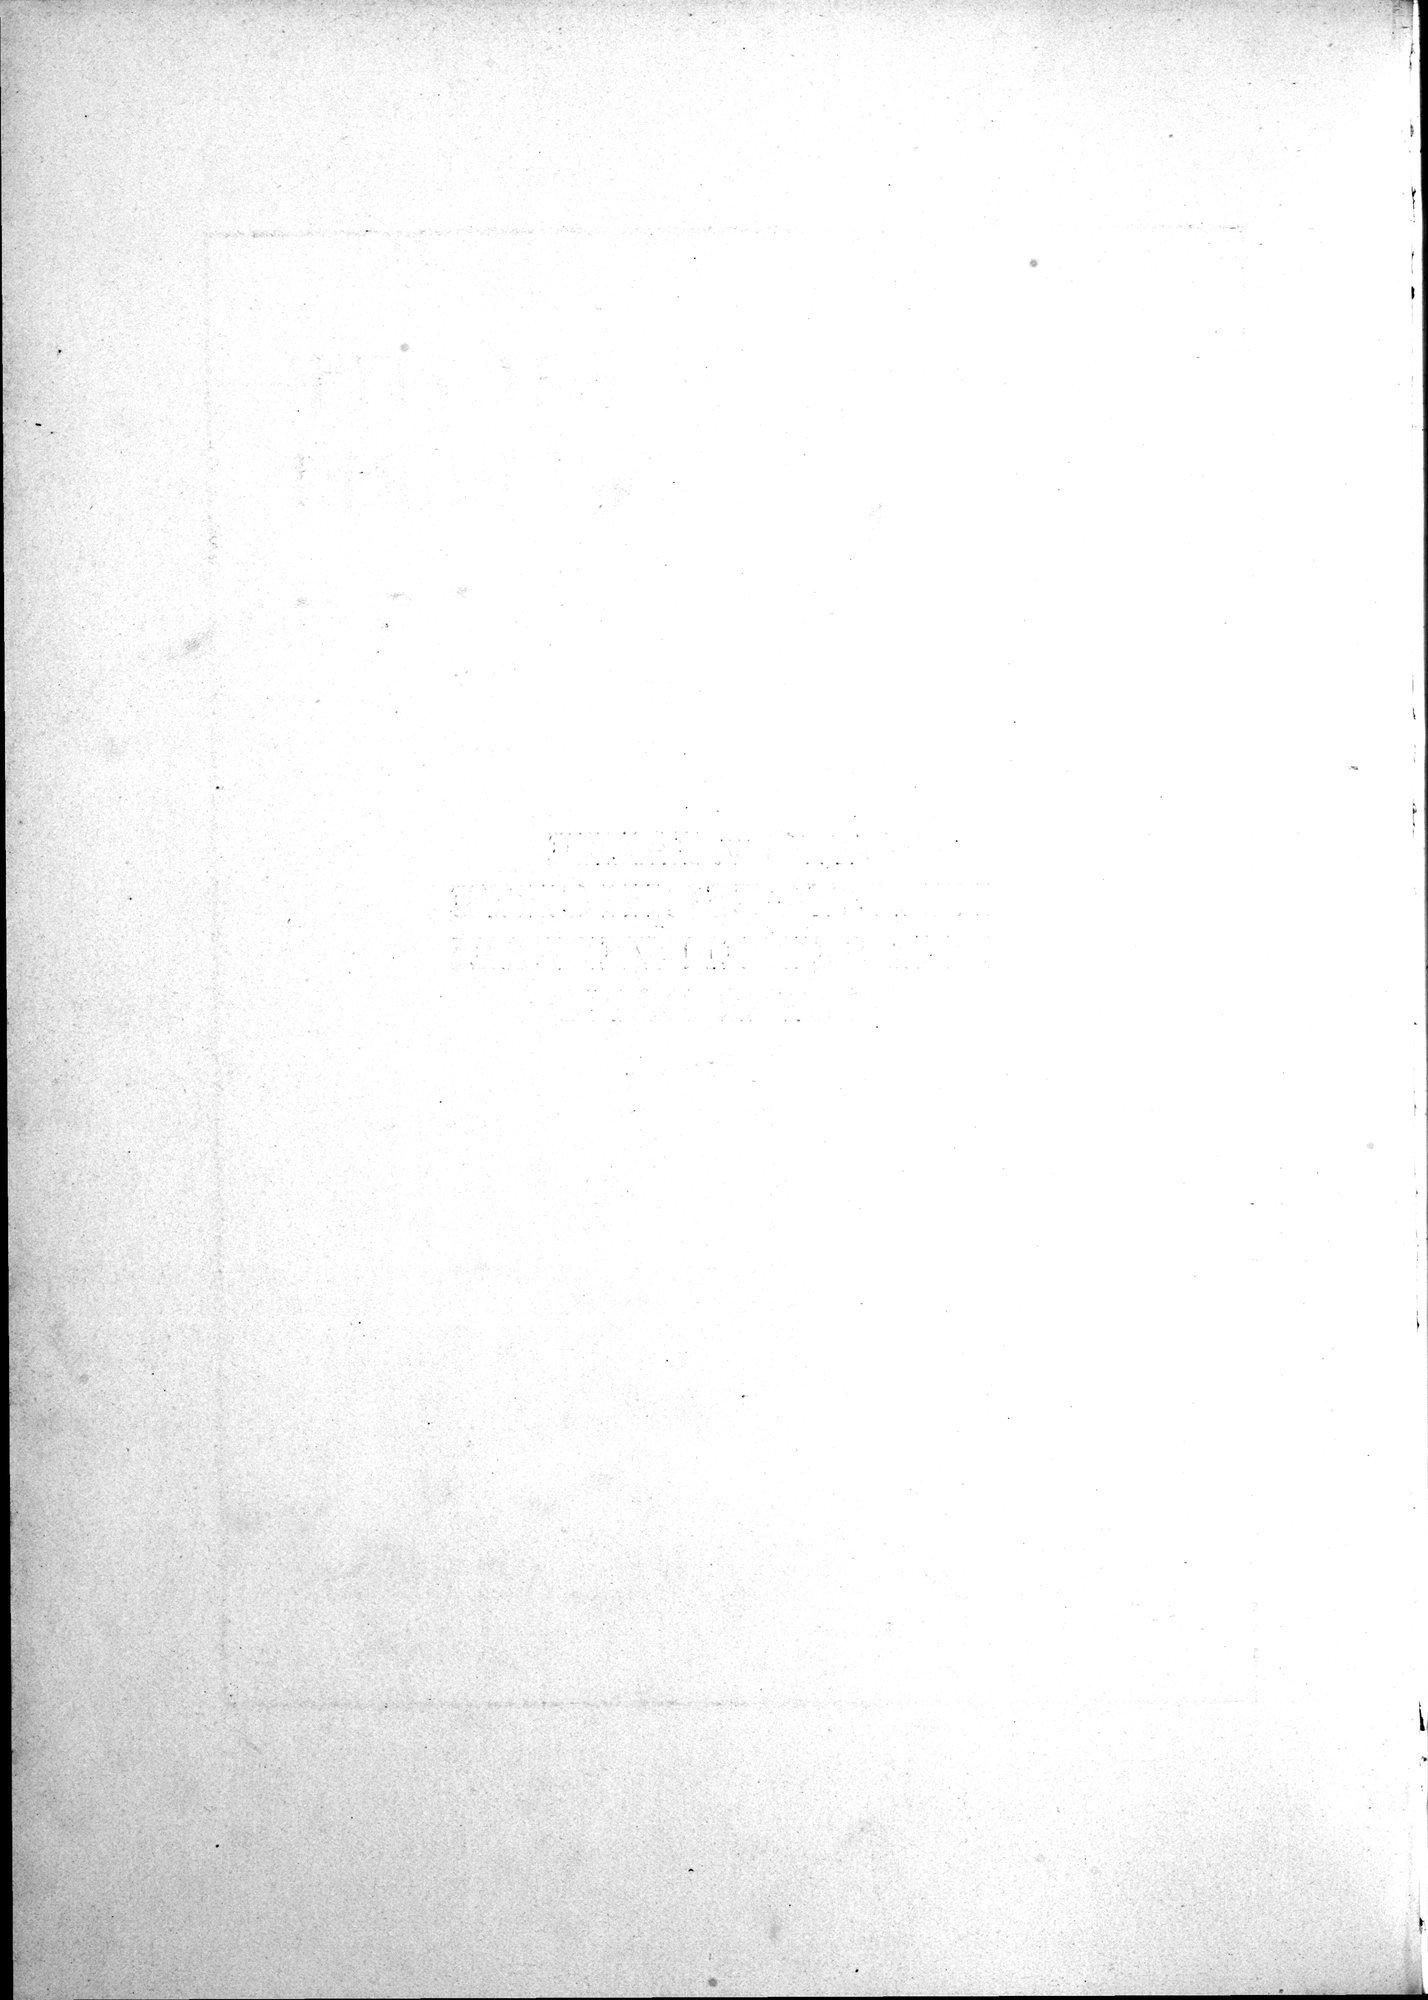 Kunstgeschichte der Seidenweberei : vol.1 / Page 10 (Grayscale High Resolution Image)